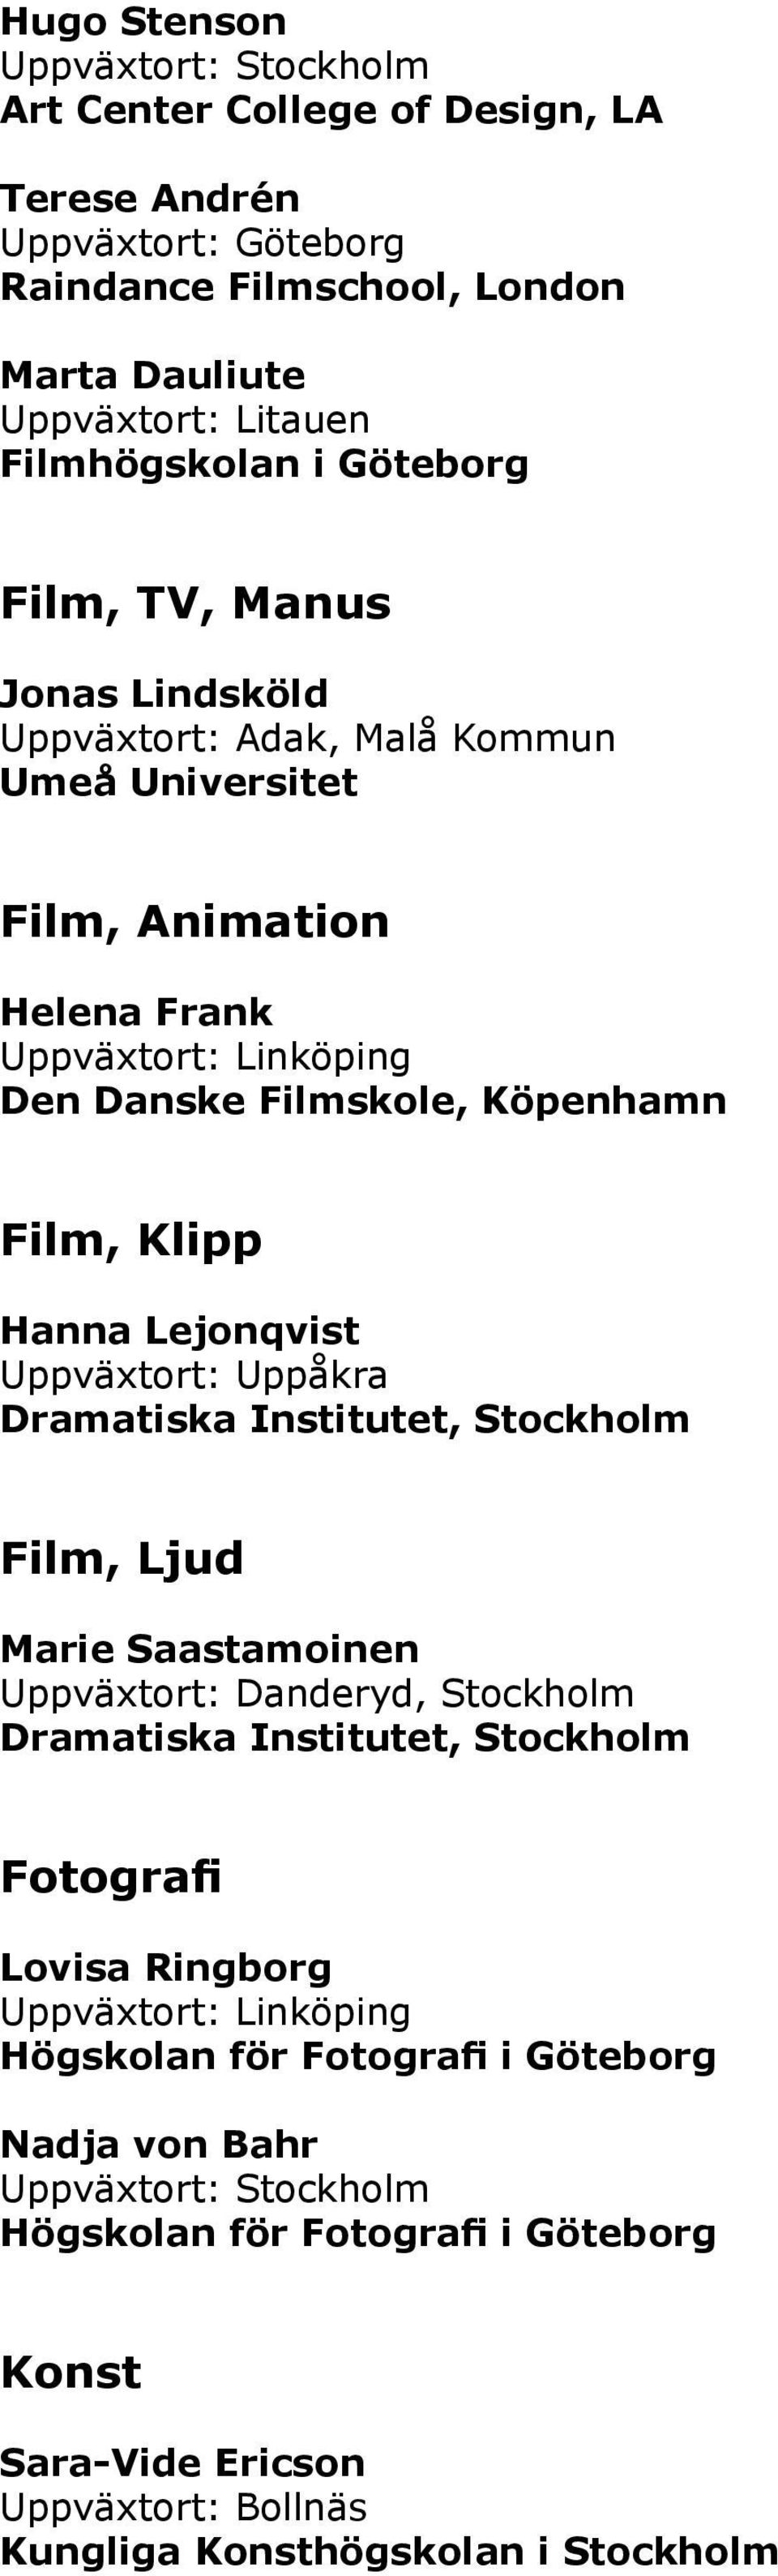 Köpenhamn Film, Klipp Hanna Lejonqvist Uppväxtort: Uppåkra Film, Ljud Marie Saastamoinen Uppväxtort: Danderyd, Stockholm Fotografi Lovisa Ringborg Uppväxtort: